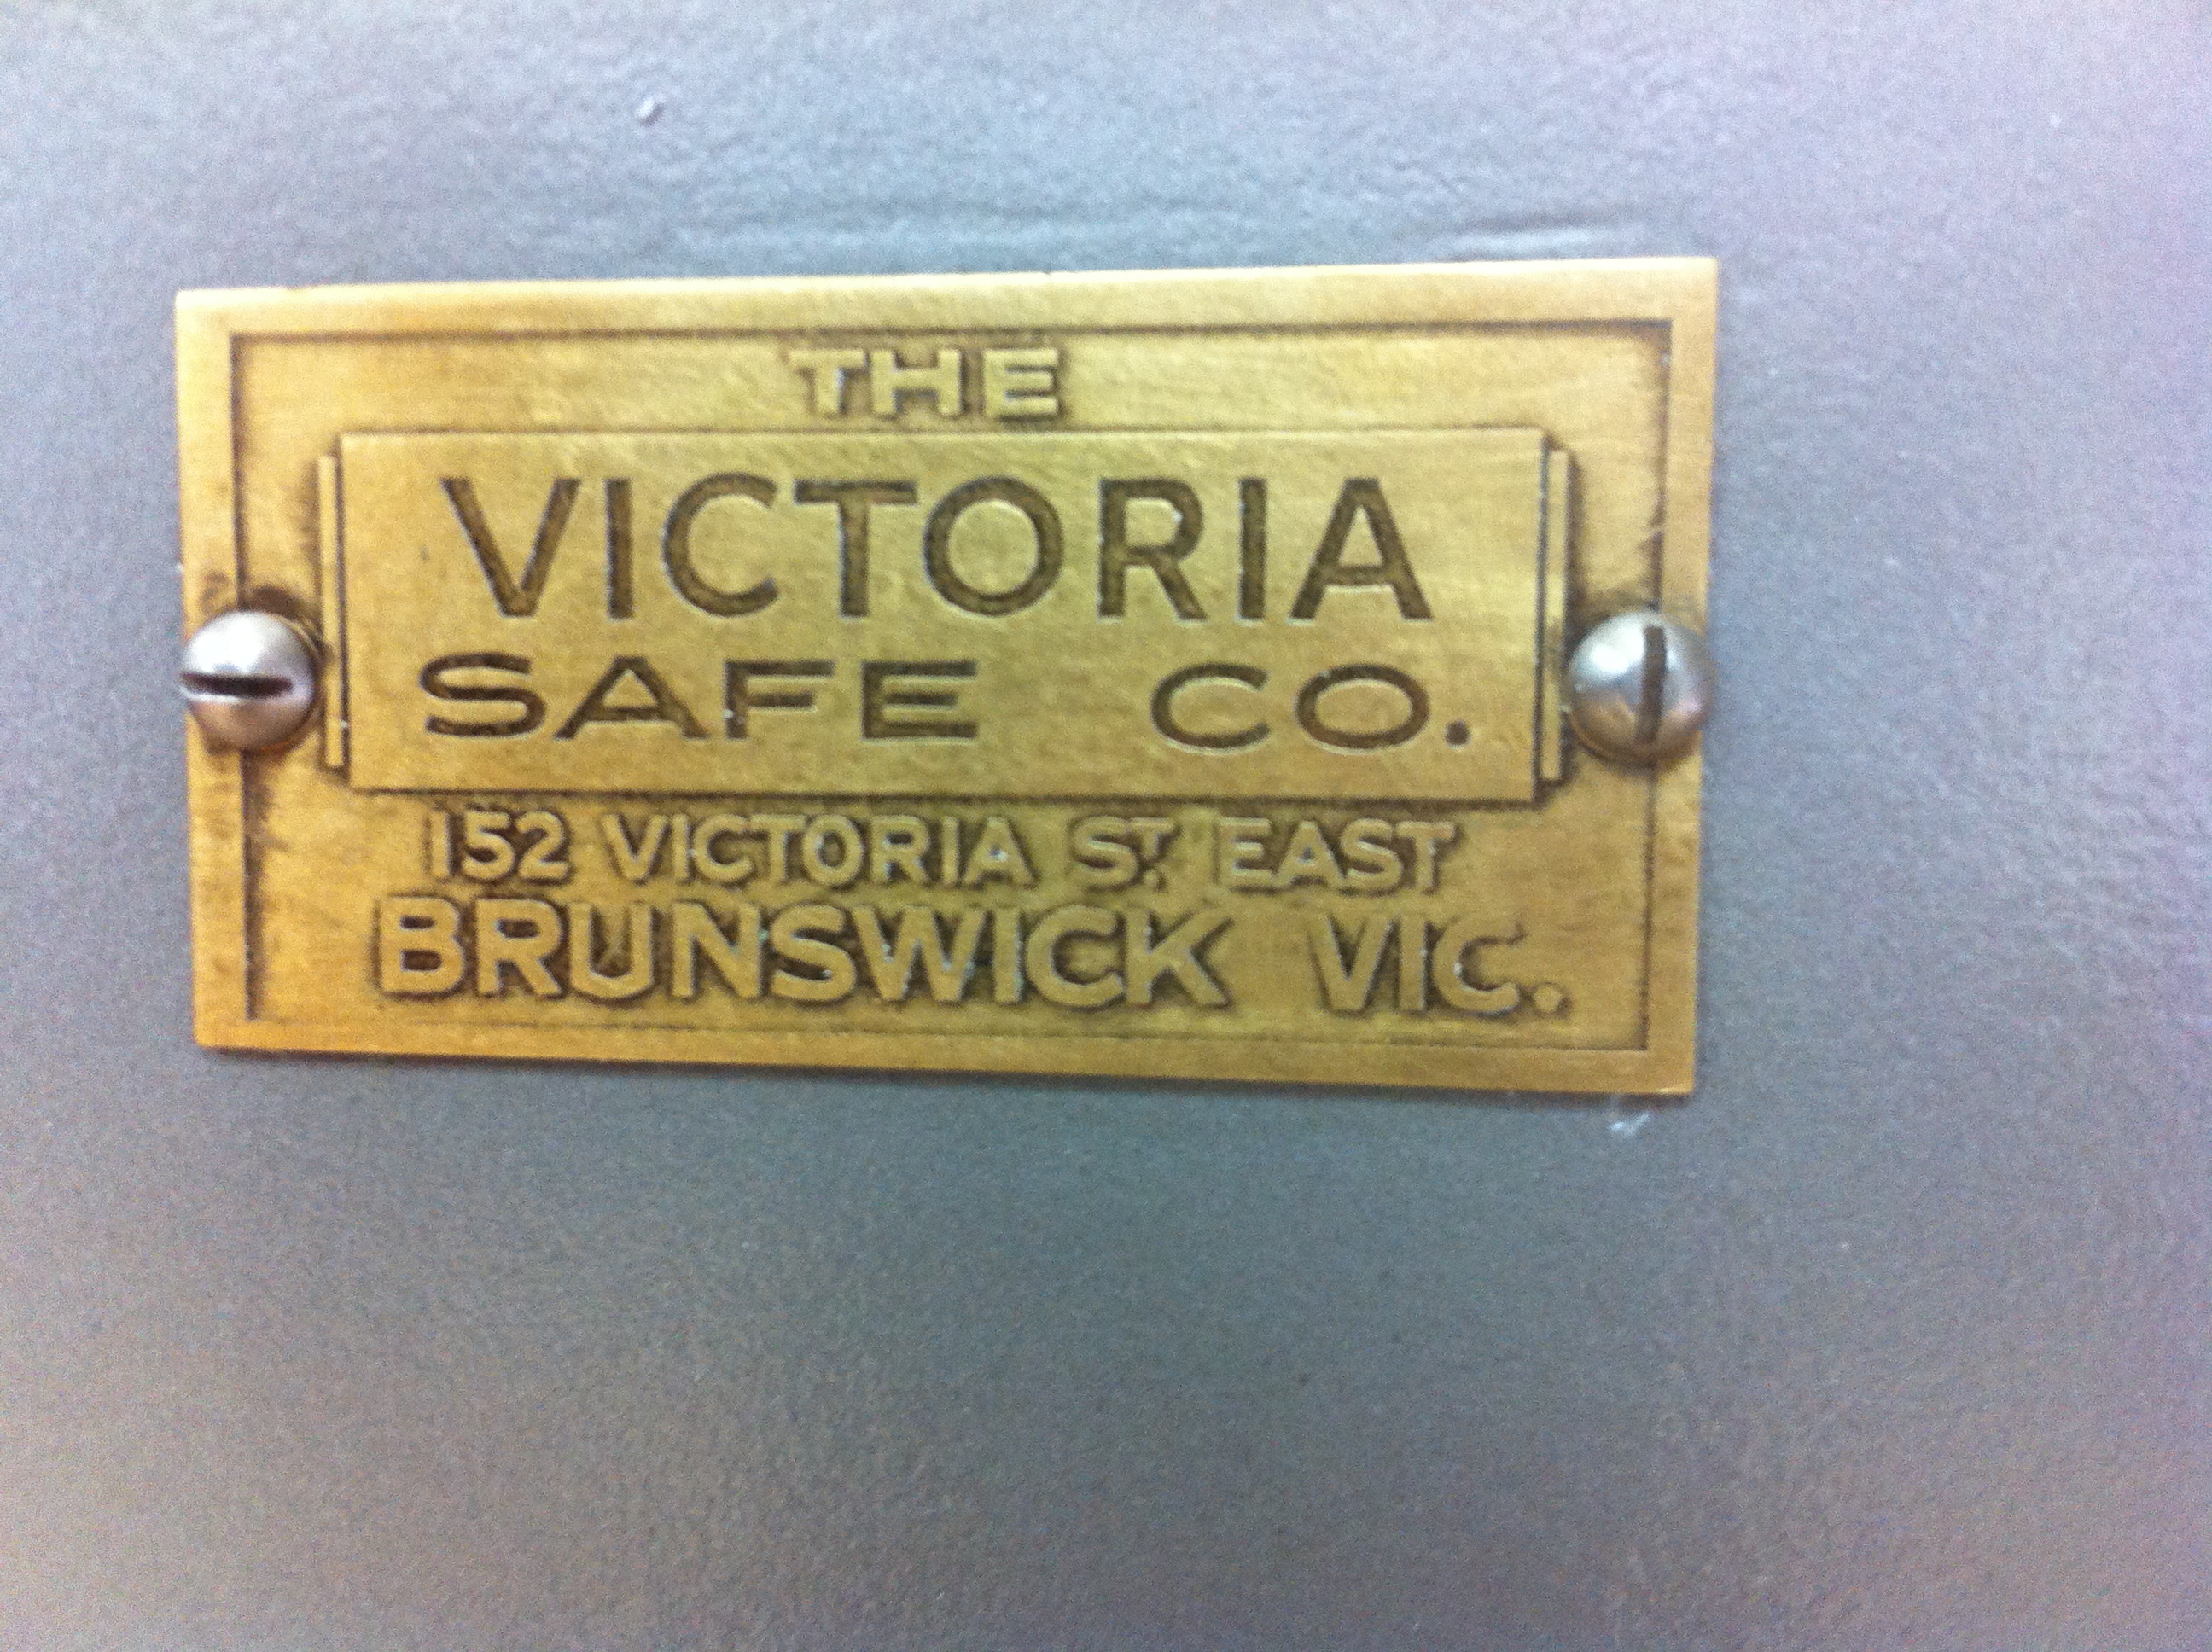 Victoria Safe Co. Brunswick. Vic